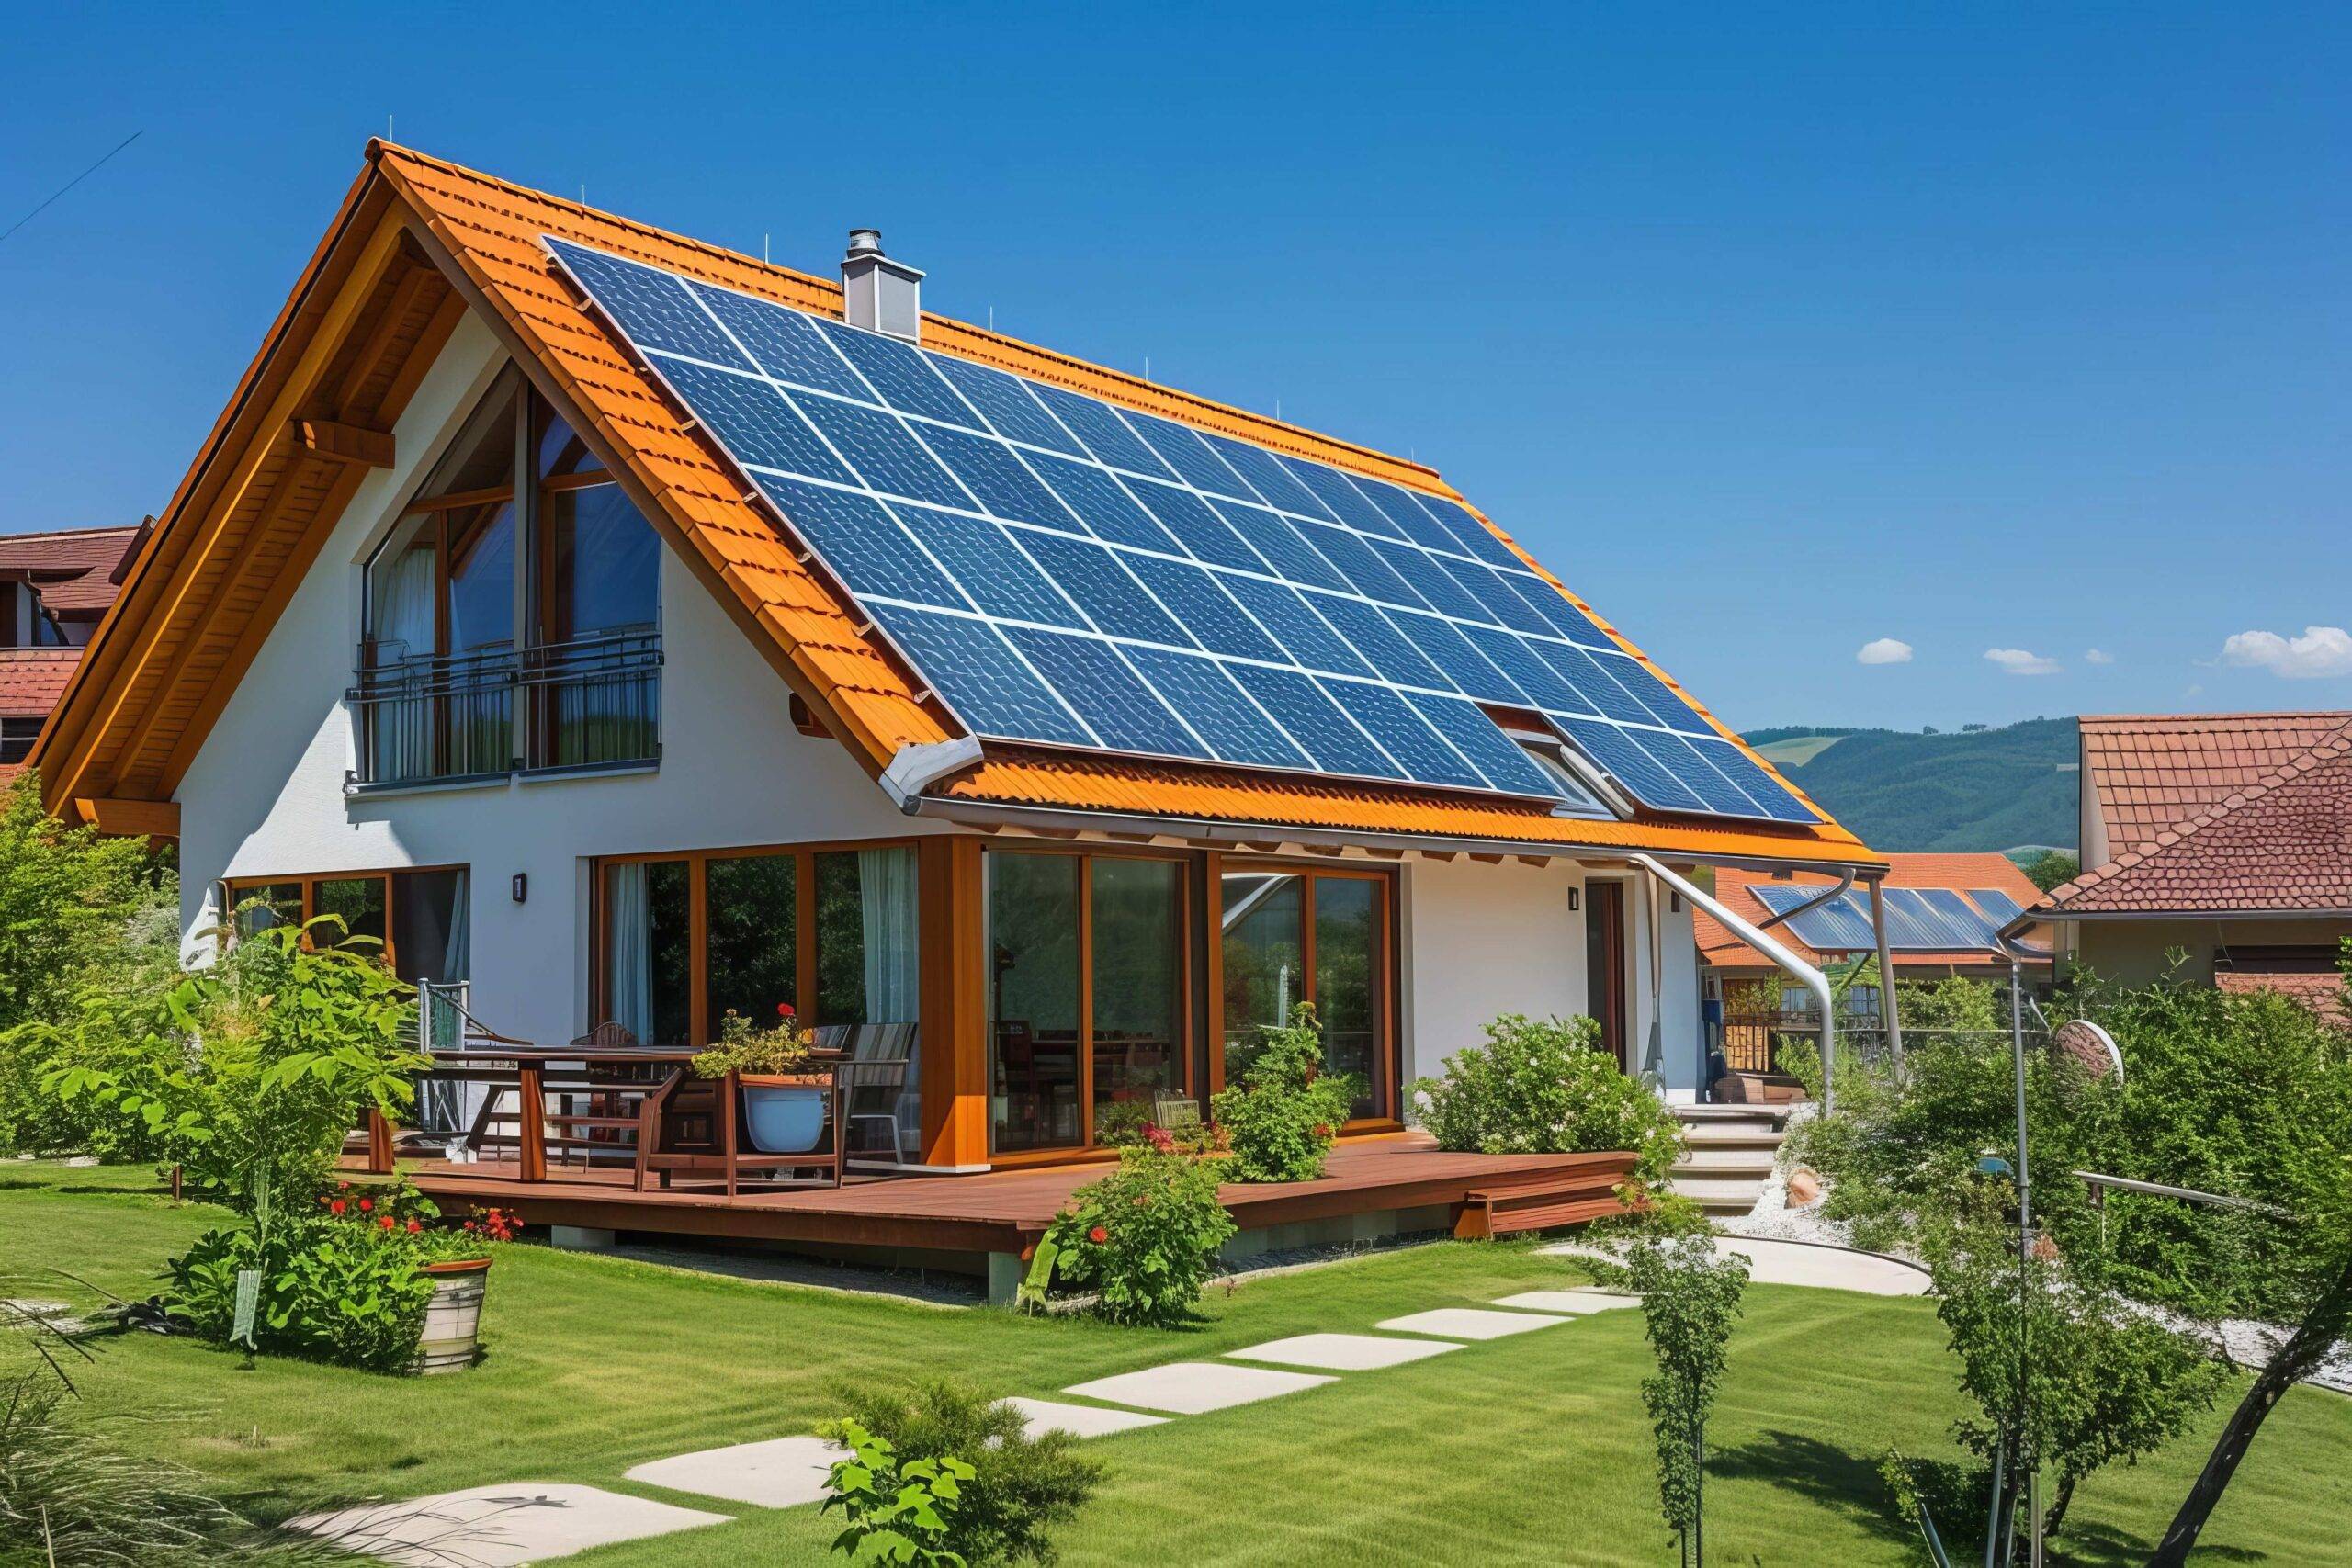 Neues Vorstadthaus mit umweltfreundlichem Design und Photovoltaik-Solarpaneelen auf dem Dach, das Fortschritte im Bereich umweltfreundliches Wohnen und nachhaltigen Hausbau widerspiegelt